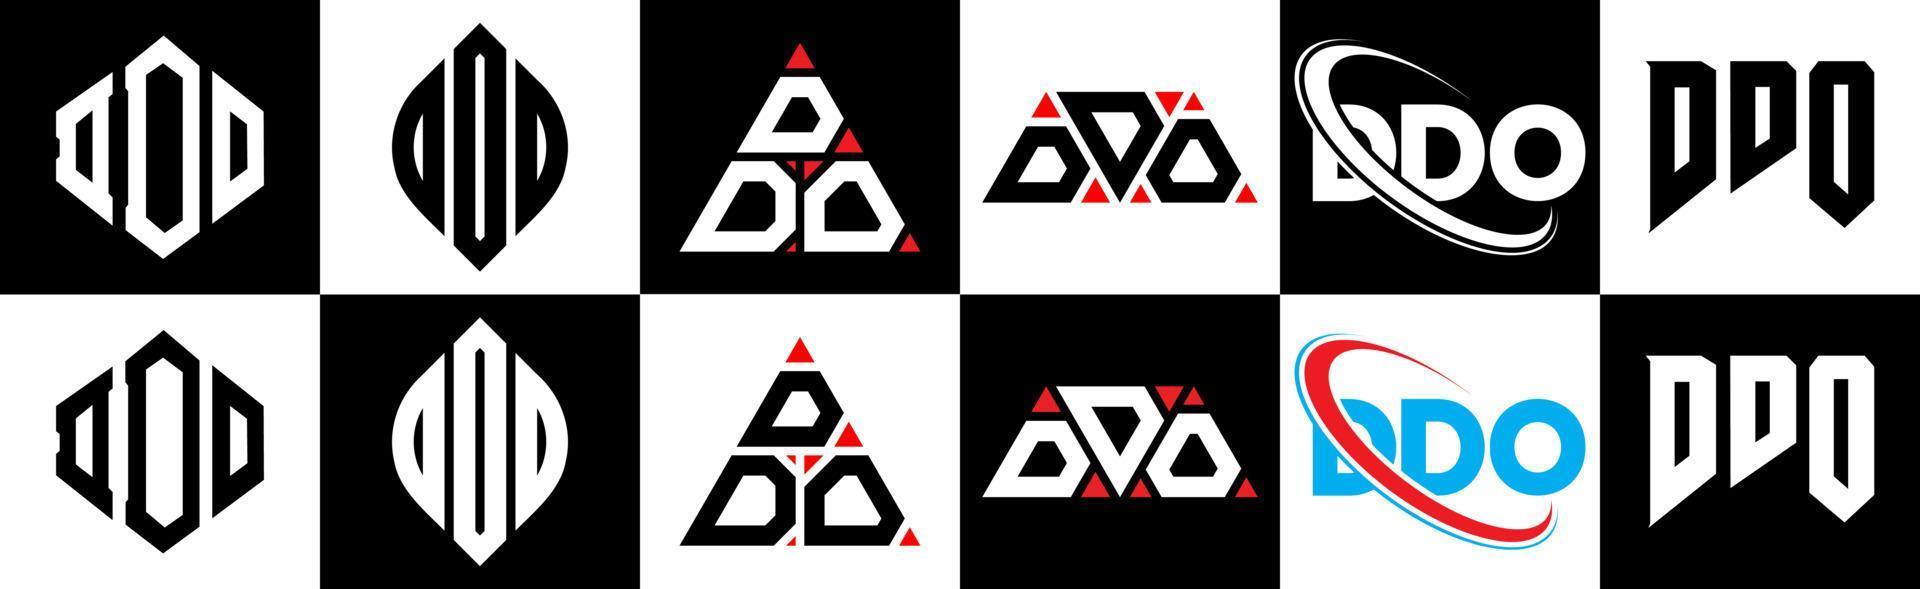 création de logo de lettre ddo en six styles. ddo polygone, cercle, triangle, hexagone, style plat et simple avec logo de lettre de variation de couleur noir et blanc dans un plan de travail. ddo logo minimaliste et classique vecteur